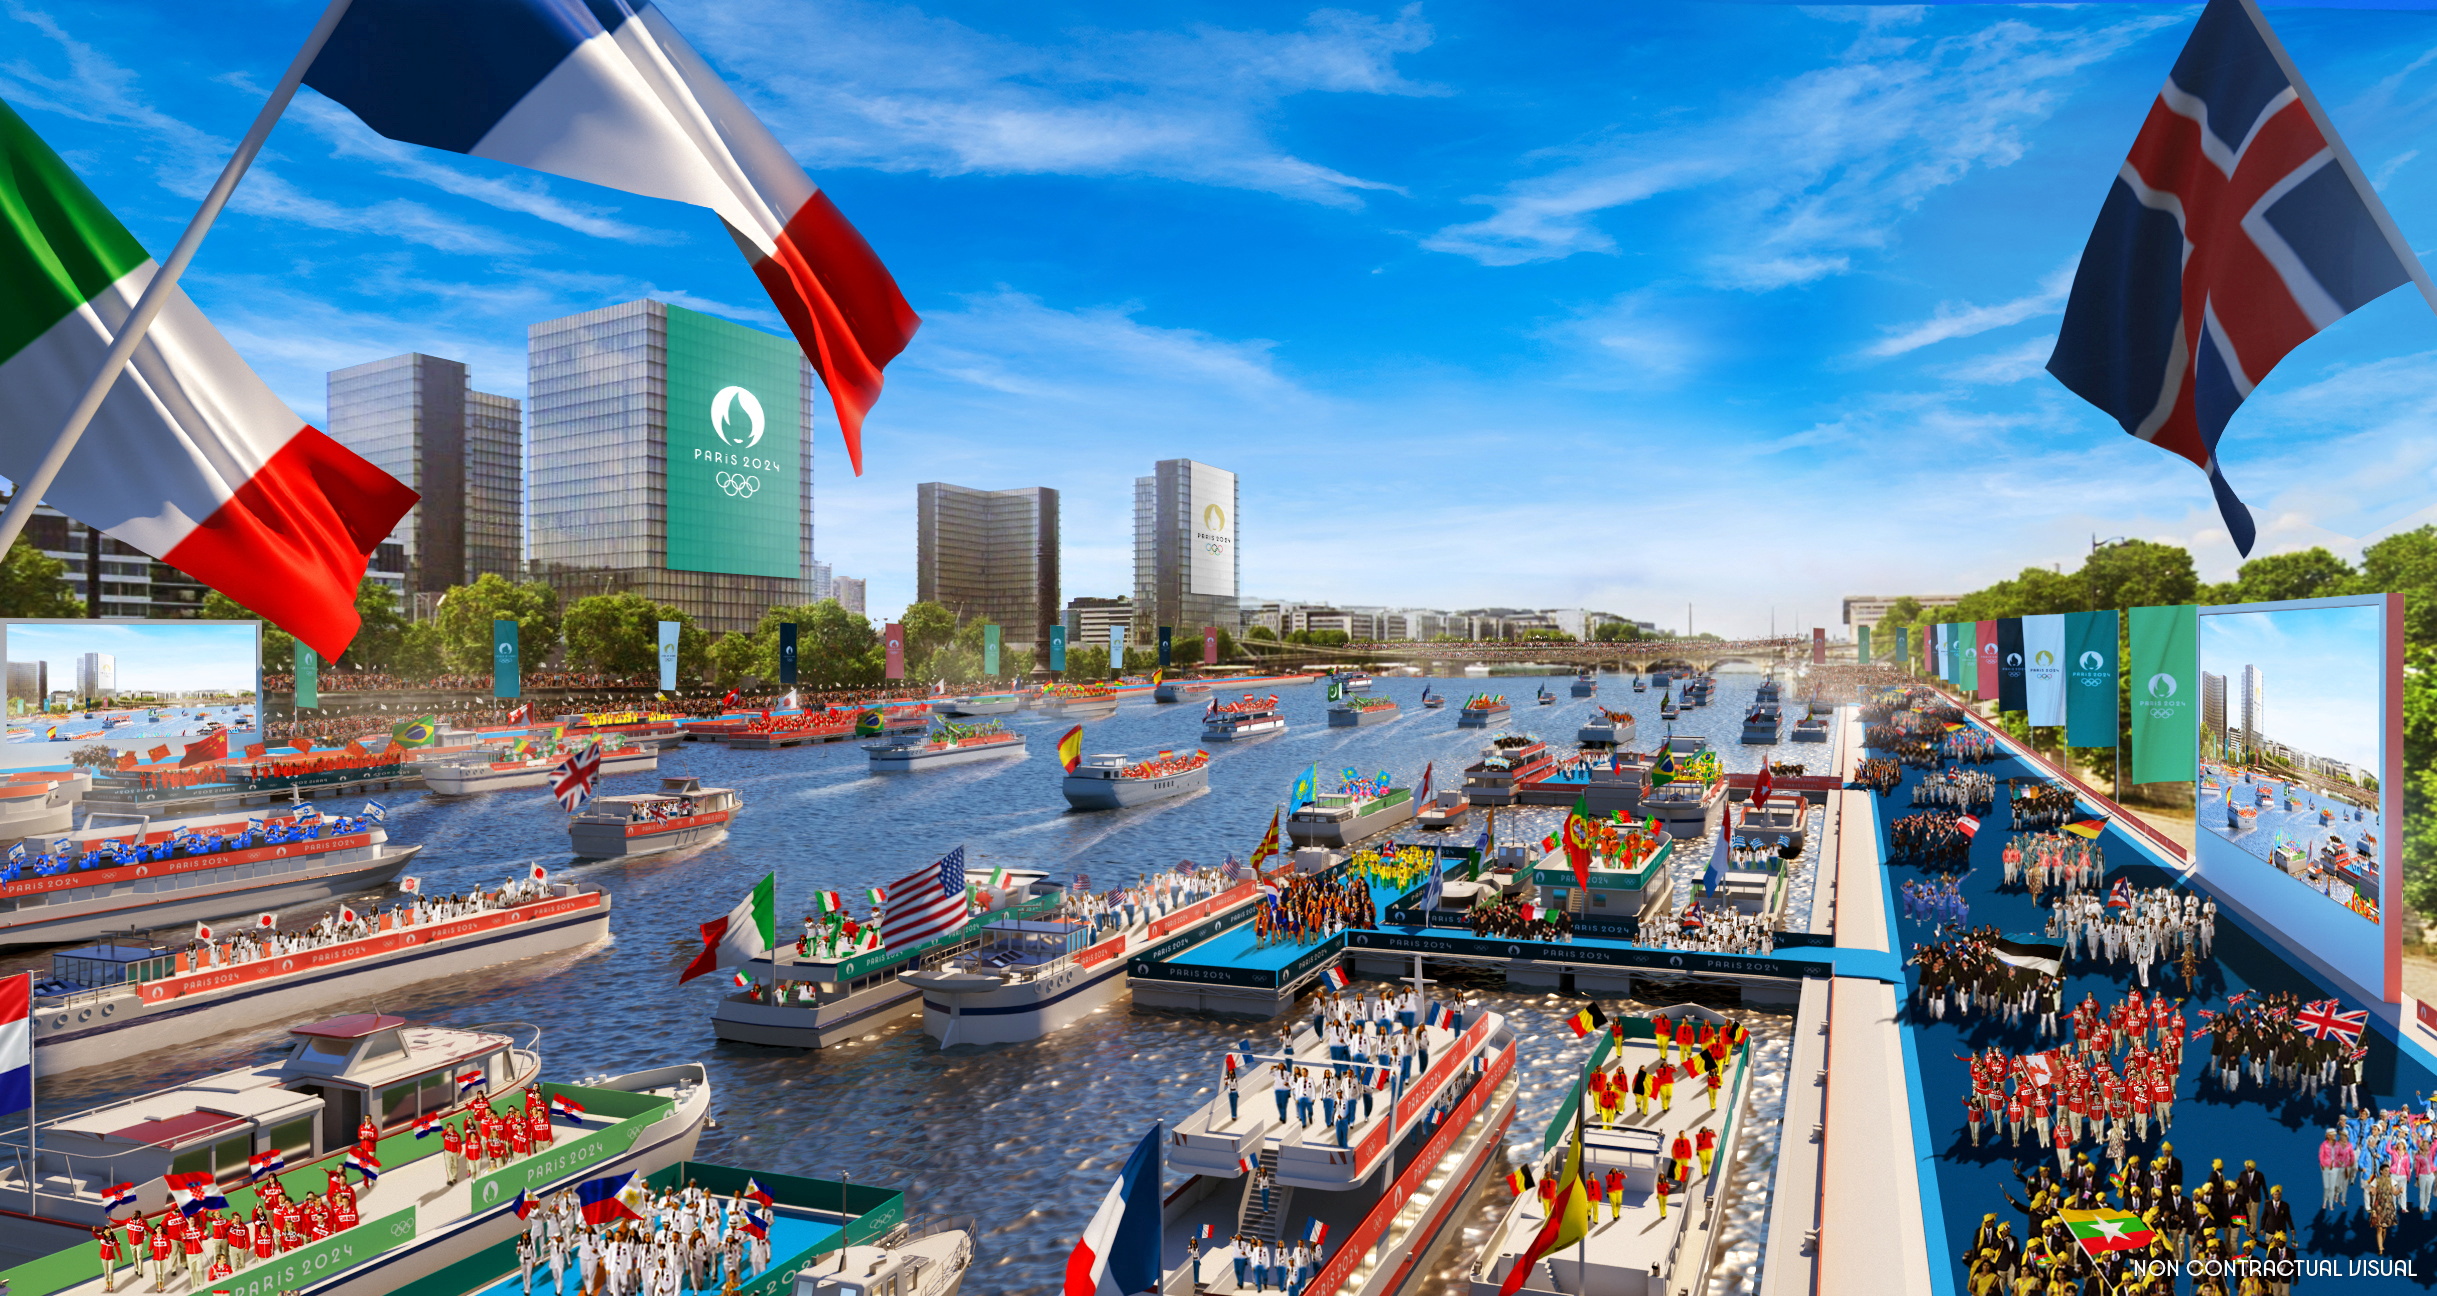 Más de 160 barcos llevarán a las delegaciones por el río Sena (Paris 2024/Florian Hulleu/Handout via REUTERS)